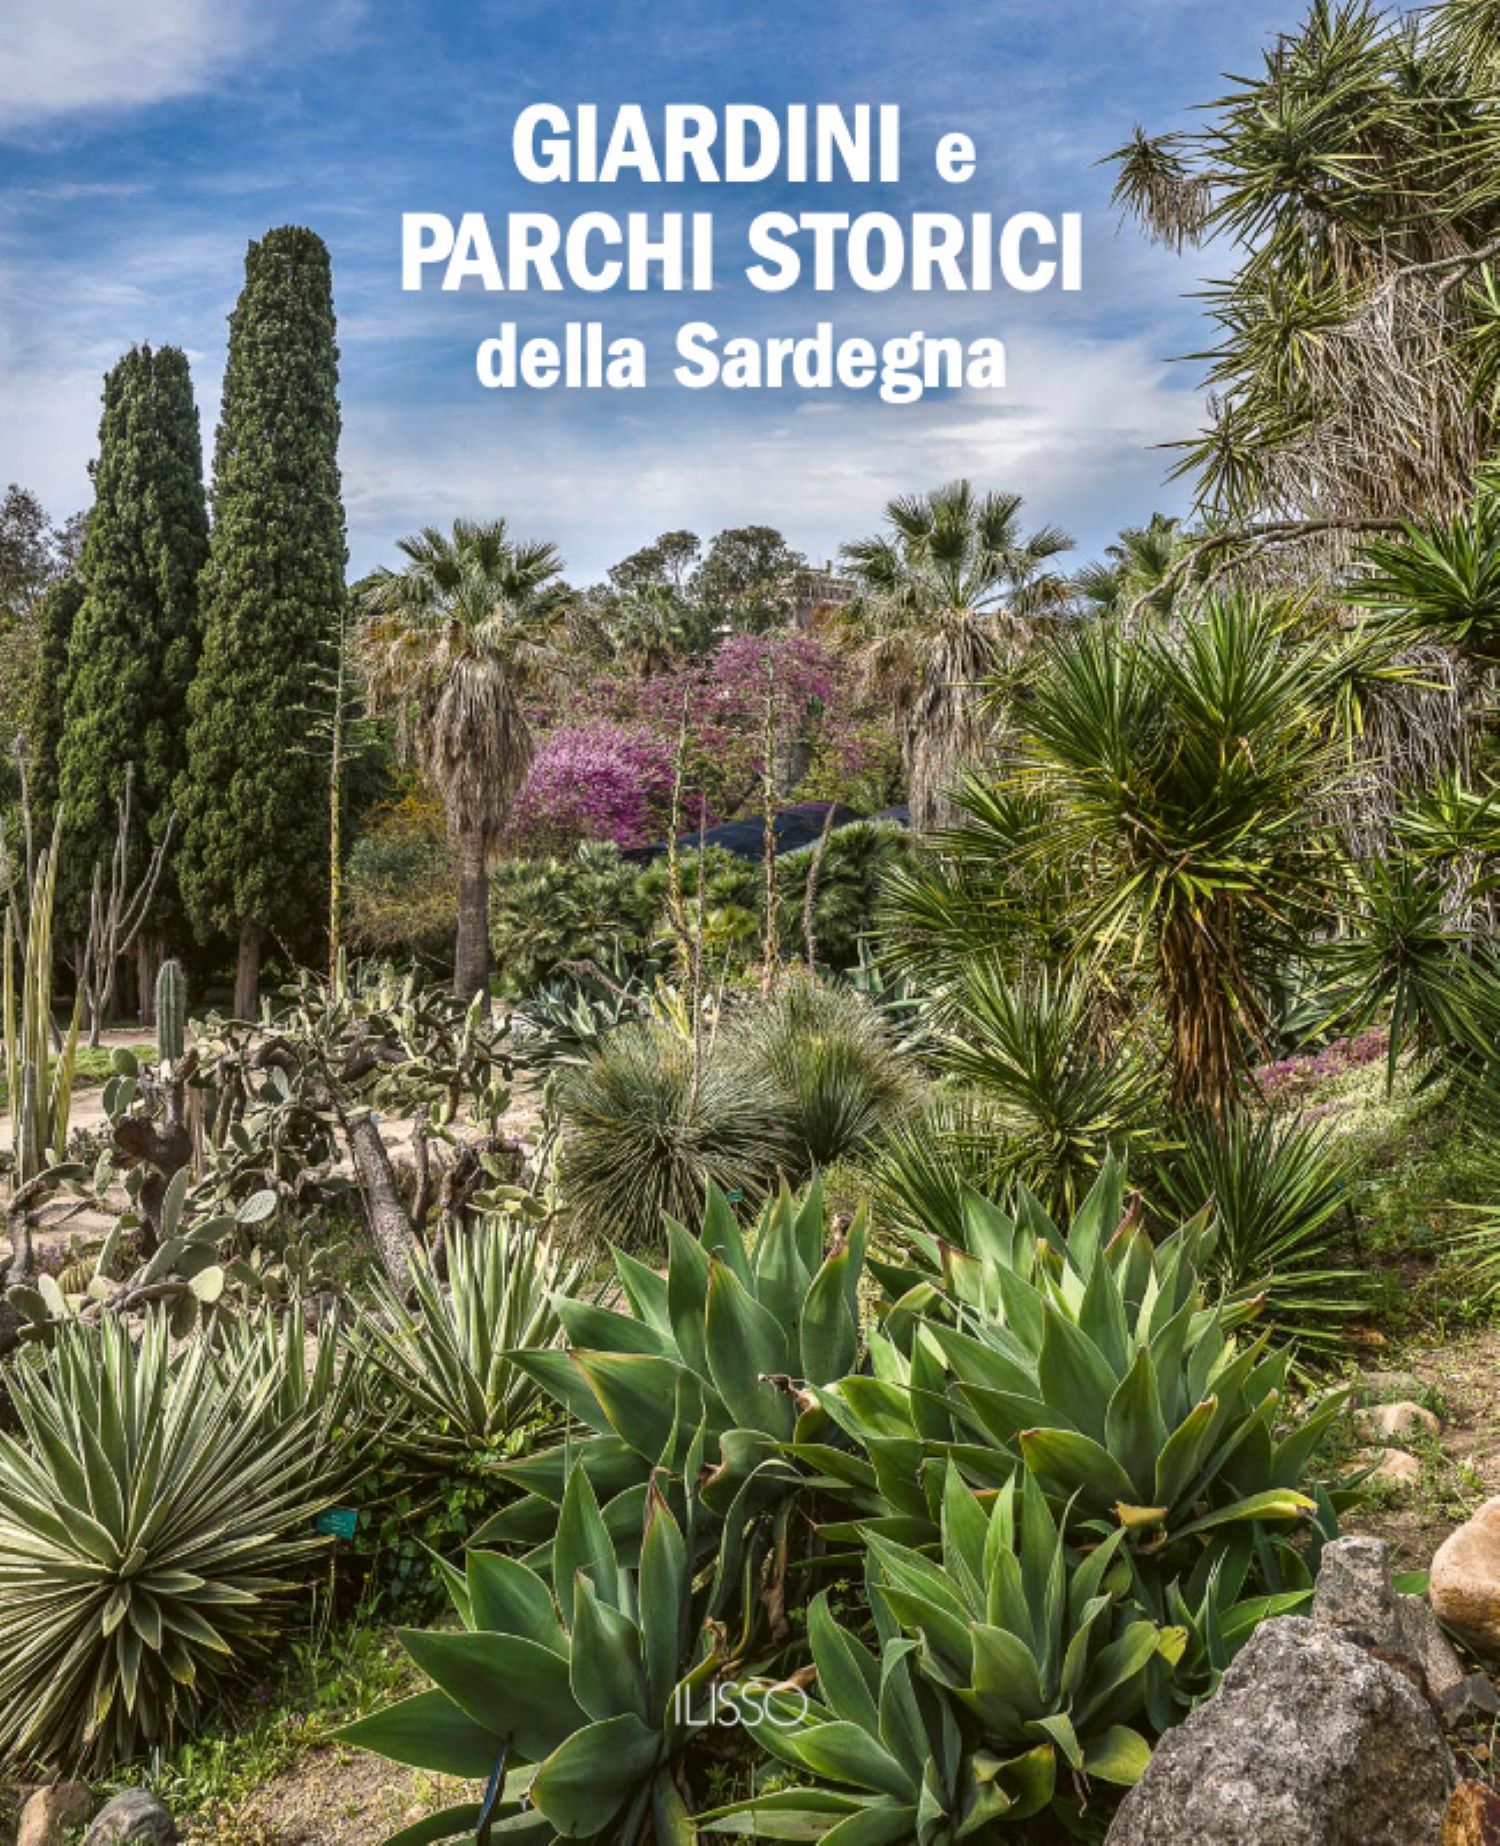 “Giardini e Parchi Storici della Sardegna”, il nuovo libro di Ballero e Soddu Pirellas: giovedì 16 la presentazione all’Orto Botanico